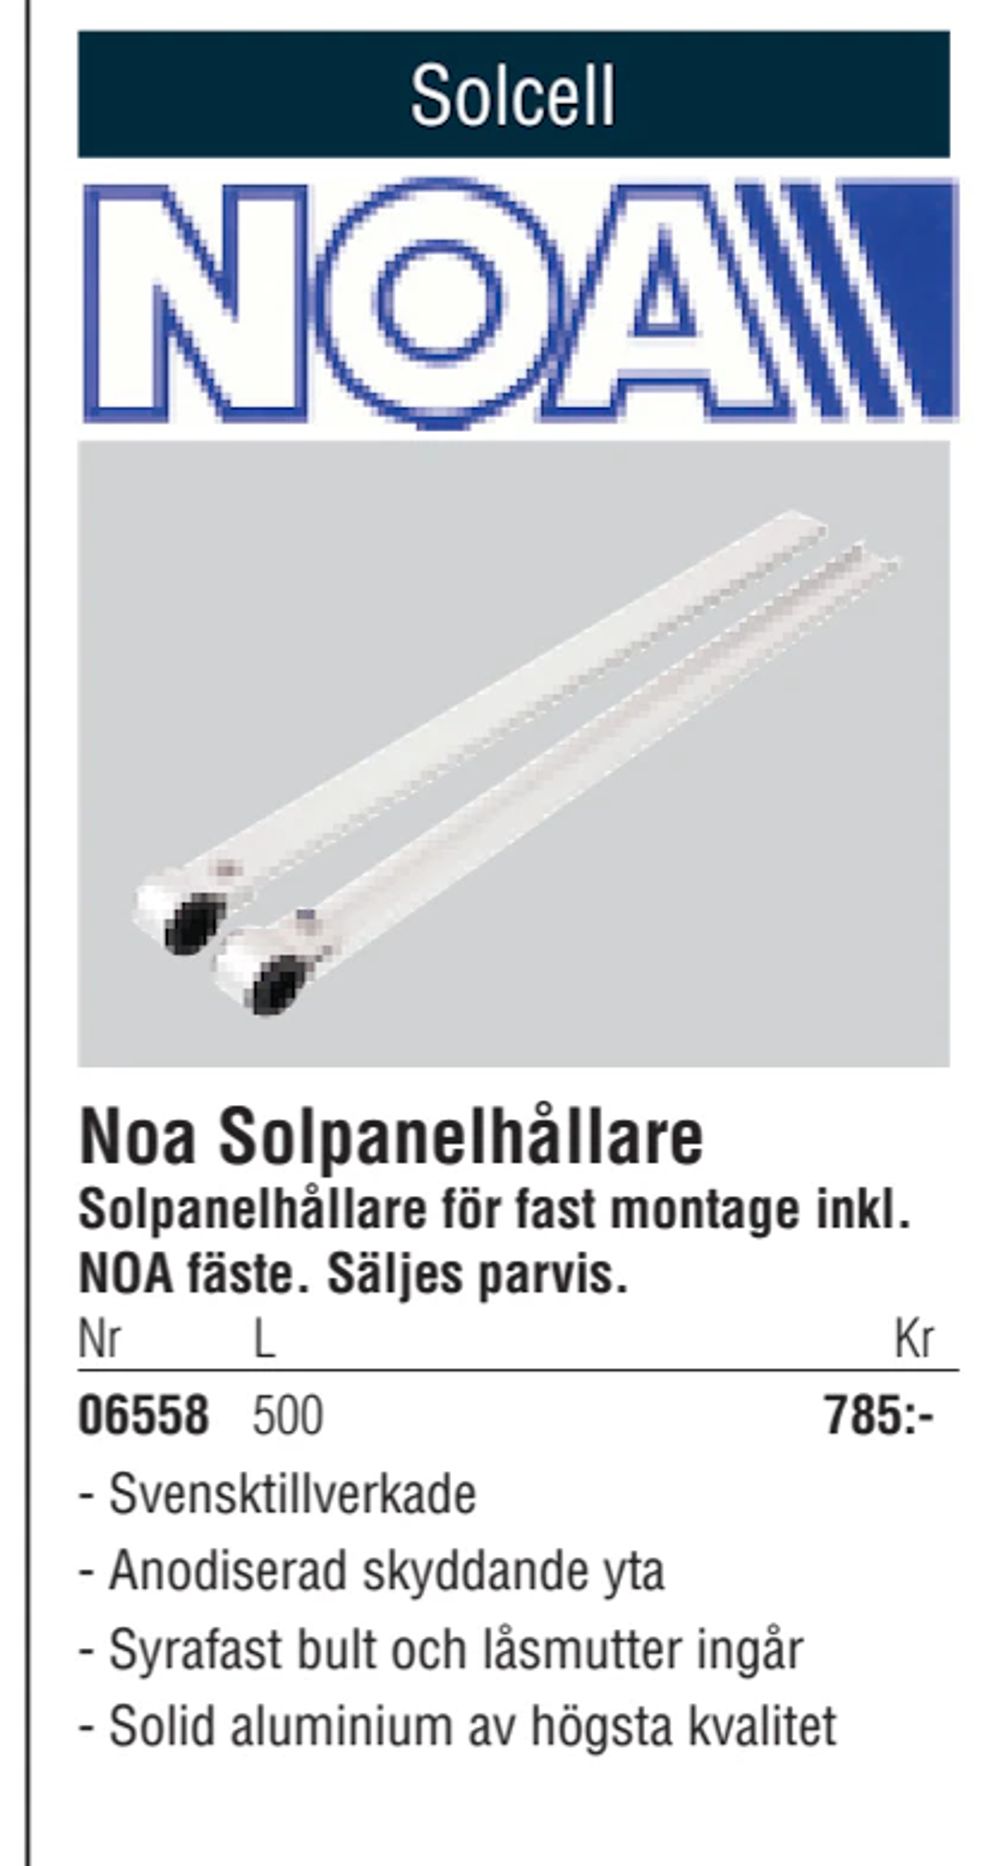 Erbjudanden på Noa Solpanelhållare från Erlandsons Brygga för 785 kr